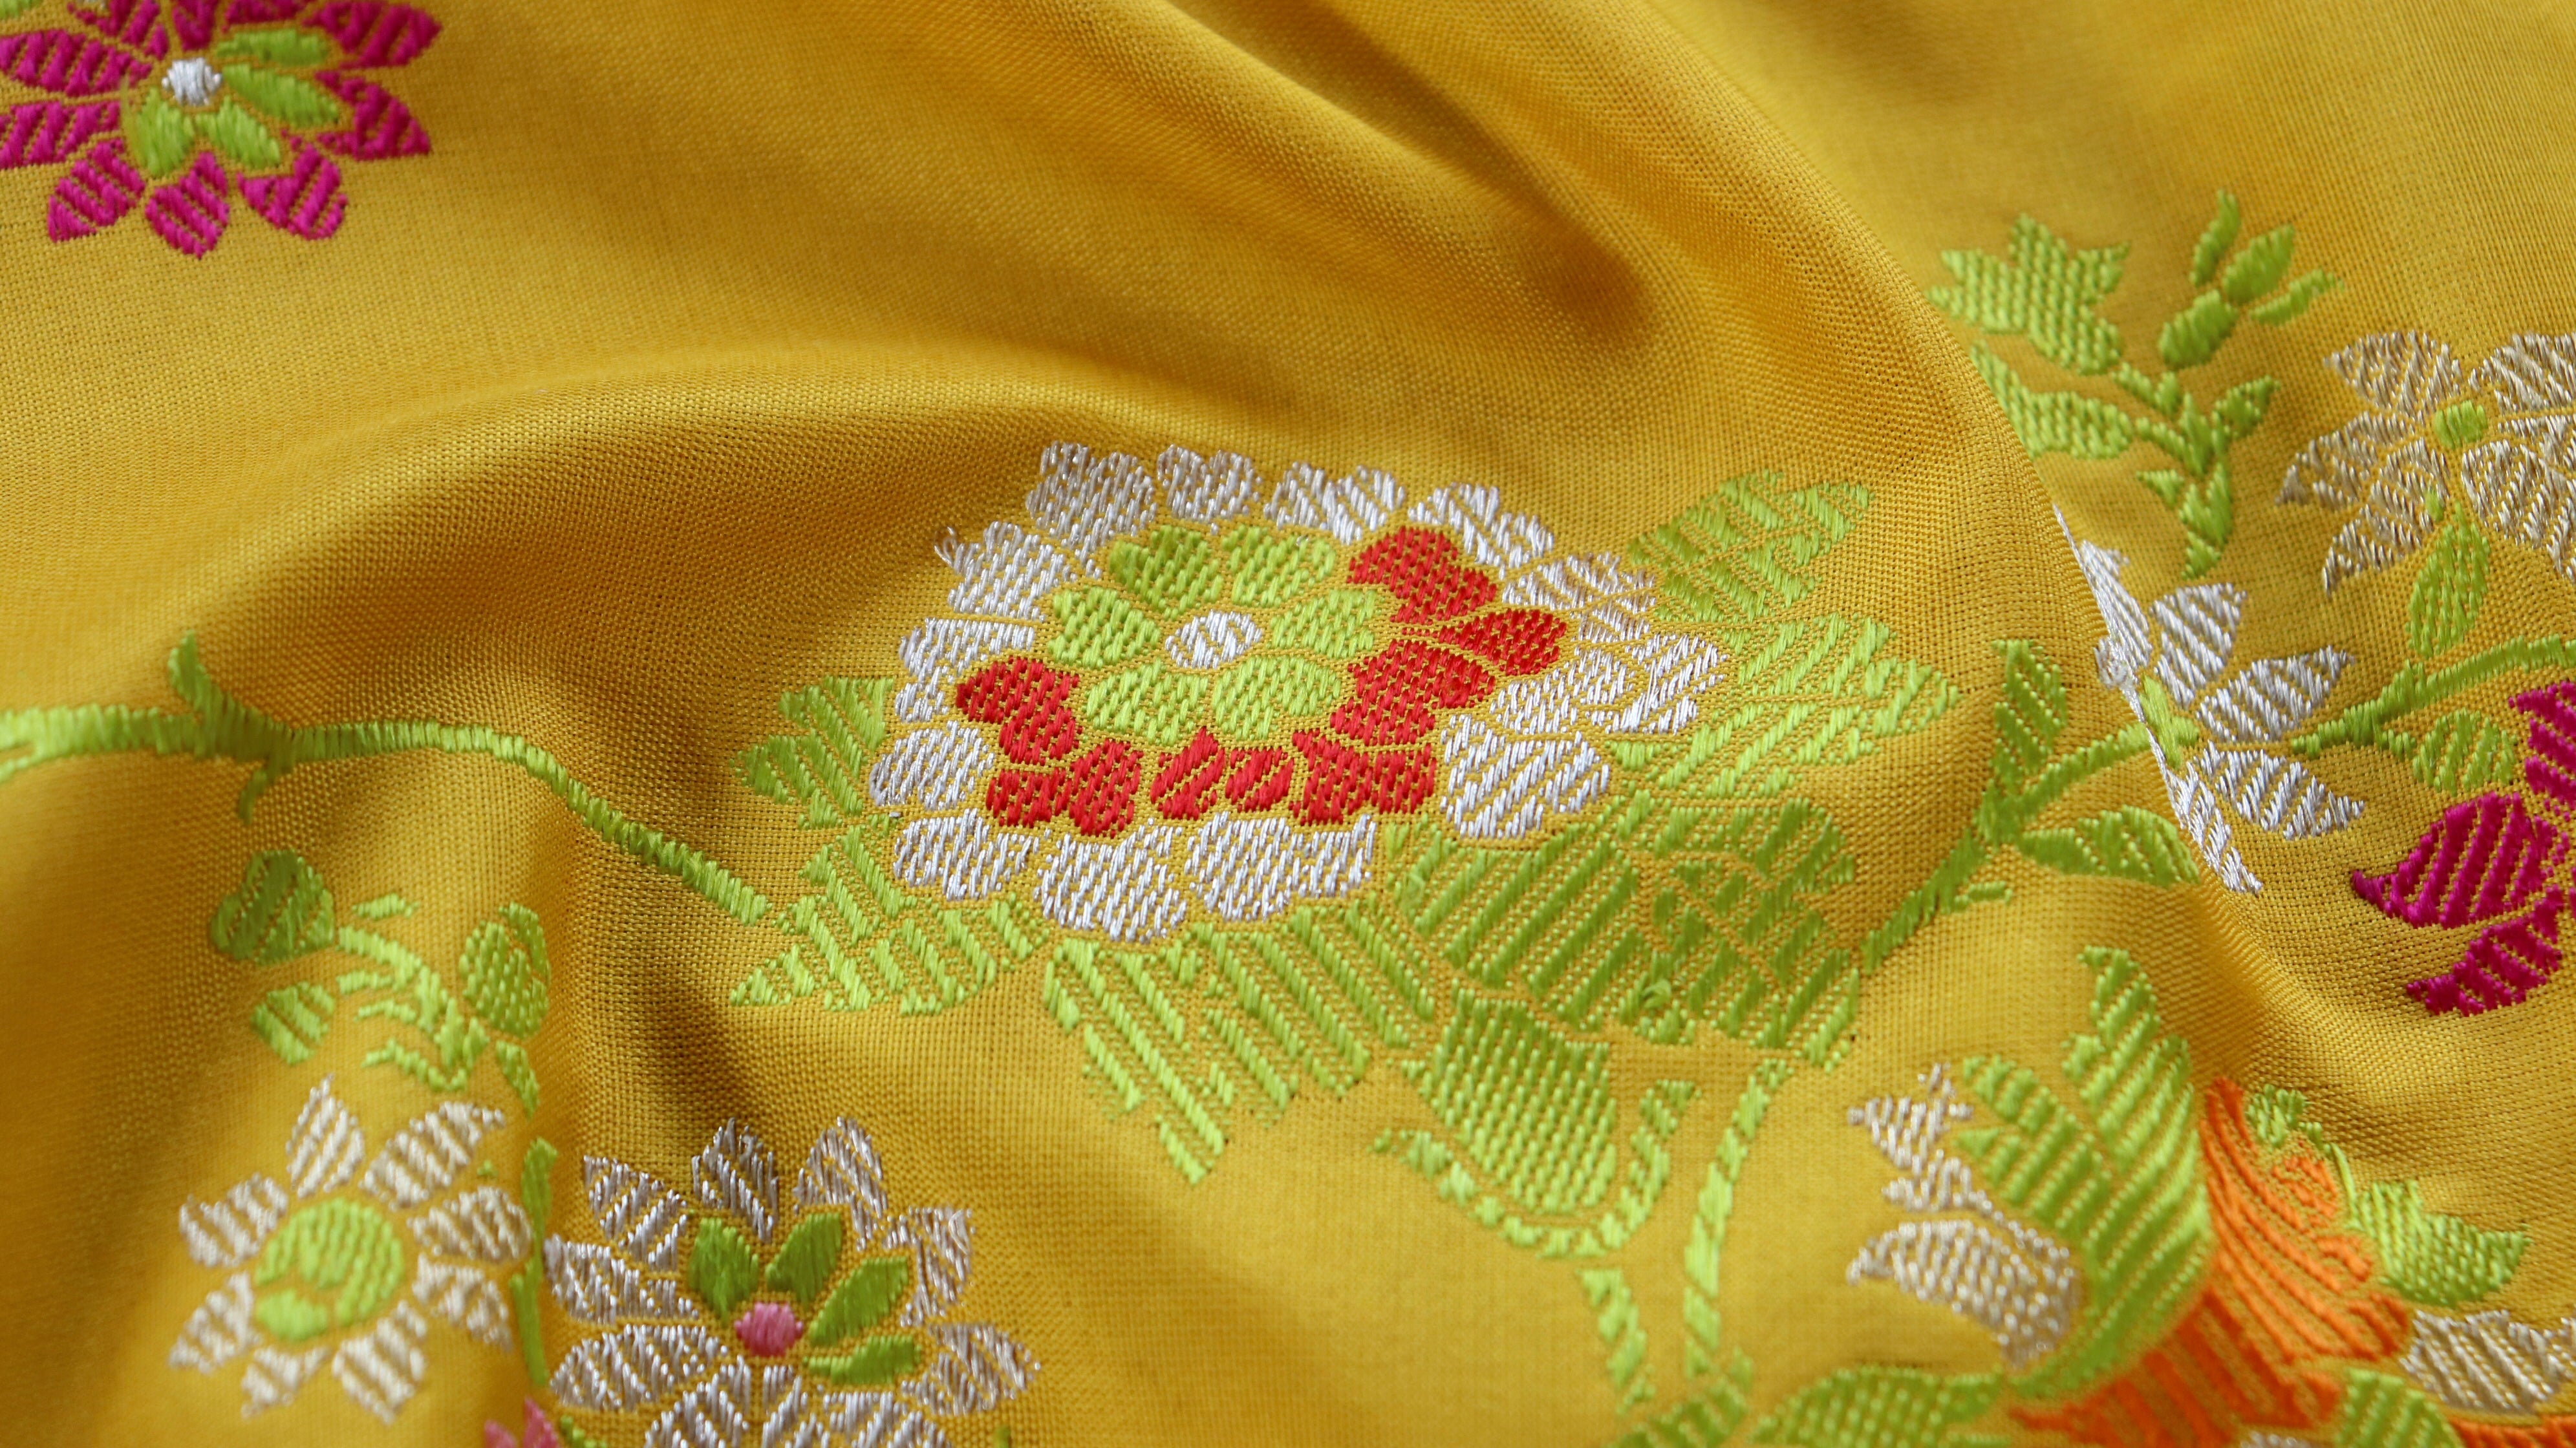 Handloom, Banarasi Handloom Saree, Alfi Saree, Tilfi Saree, Tilfi Saree Banaras, Tilfi, Banarasi Bunkar, Banarasi Bridal Wear, BridalWear, Banarasi Handloom Banarasi Yellow Meenadar Kadhua Pure Silk Handloom Banarasi Saree Banarasi Saree